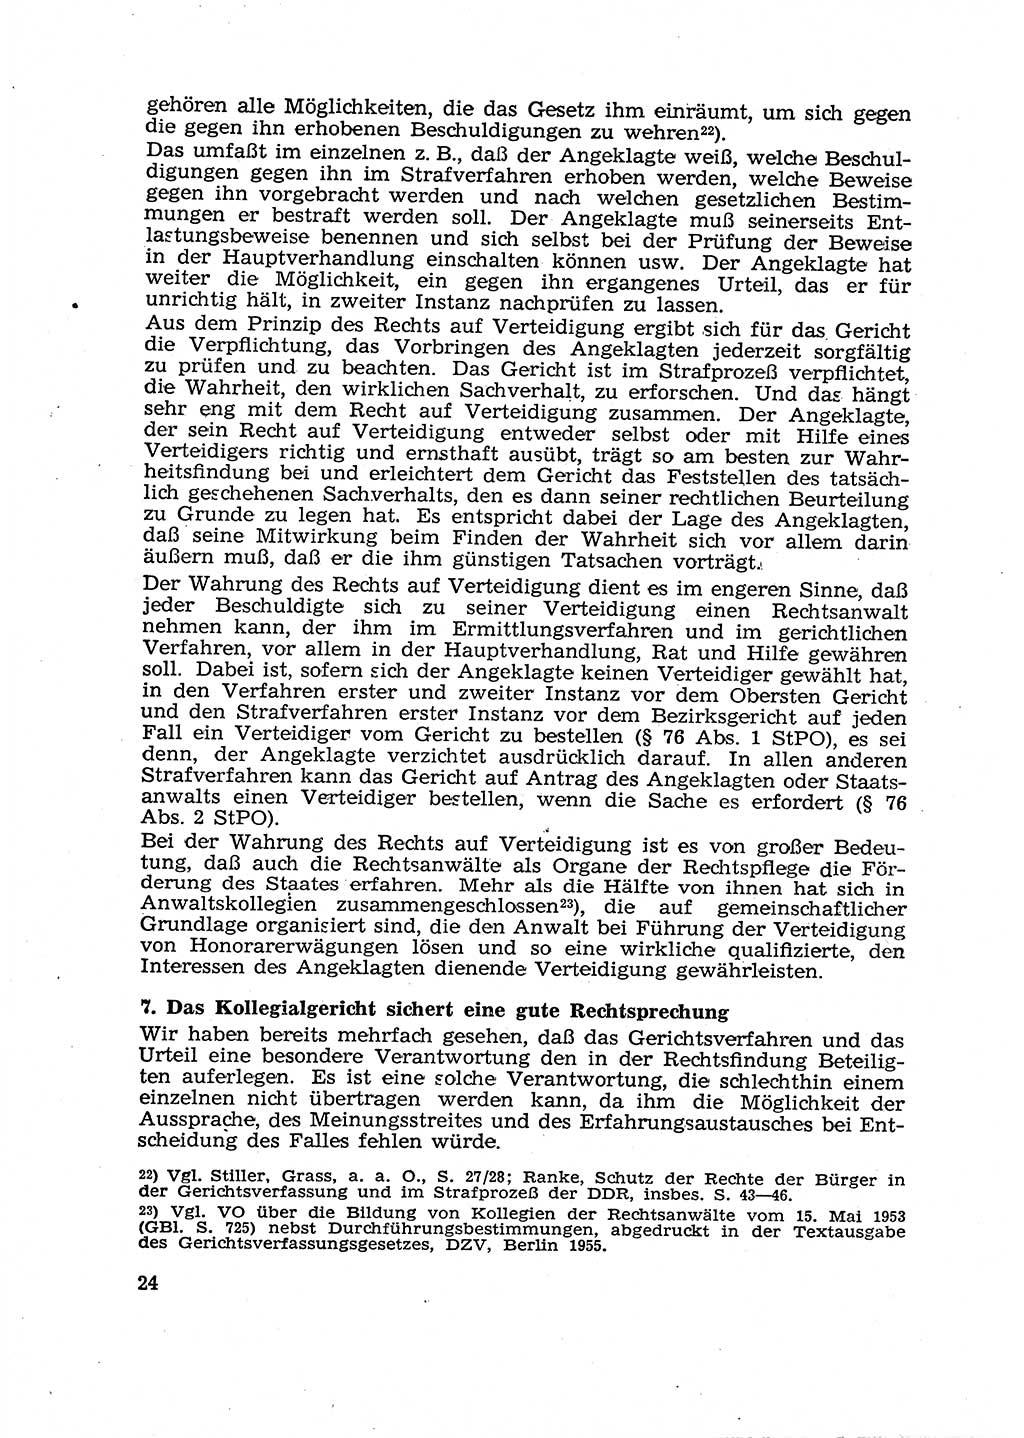 Gericht und Rechtsprechung in der Deutschen Demokratischen Republik (DDR) 1956, Seite 24 (Ger. Rechtspr. DDR 1956, S. 24)